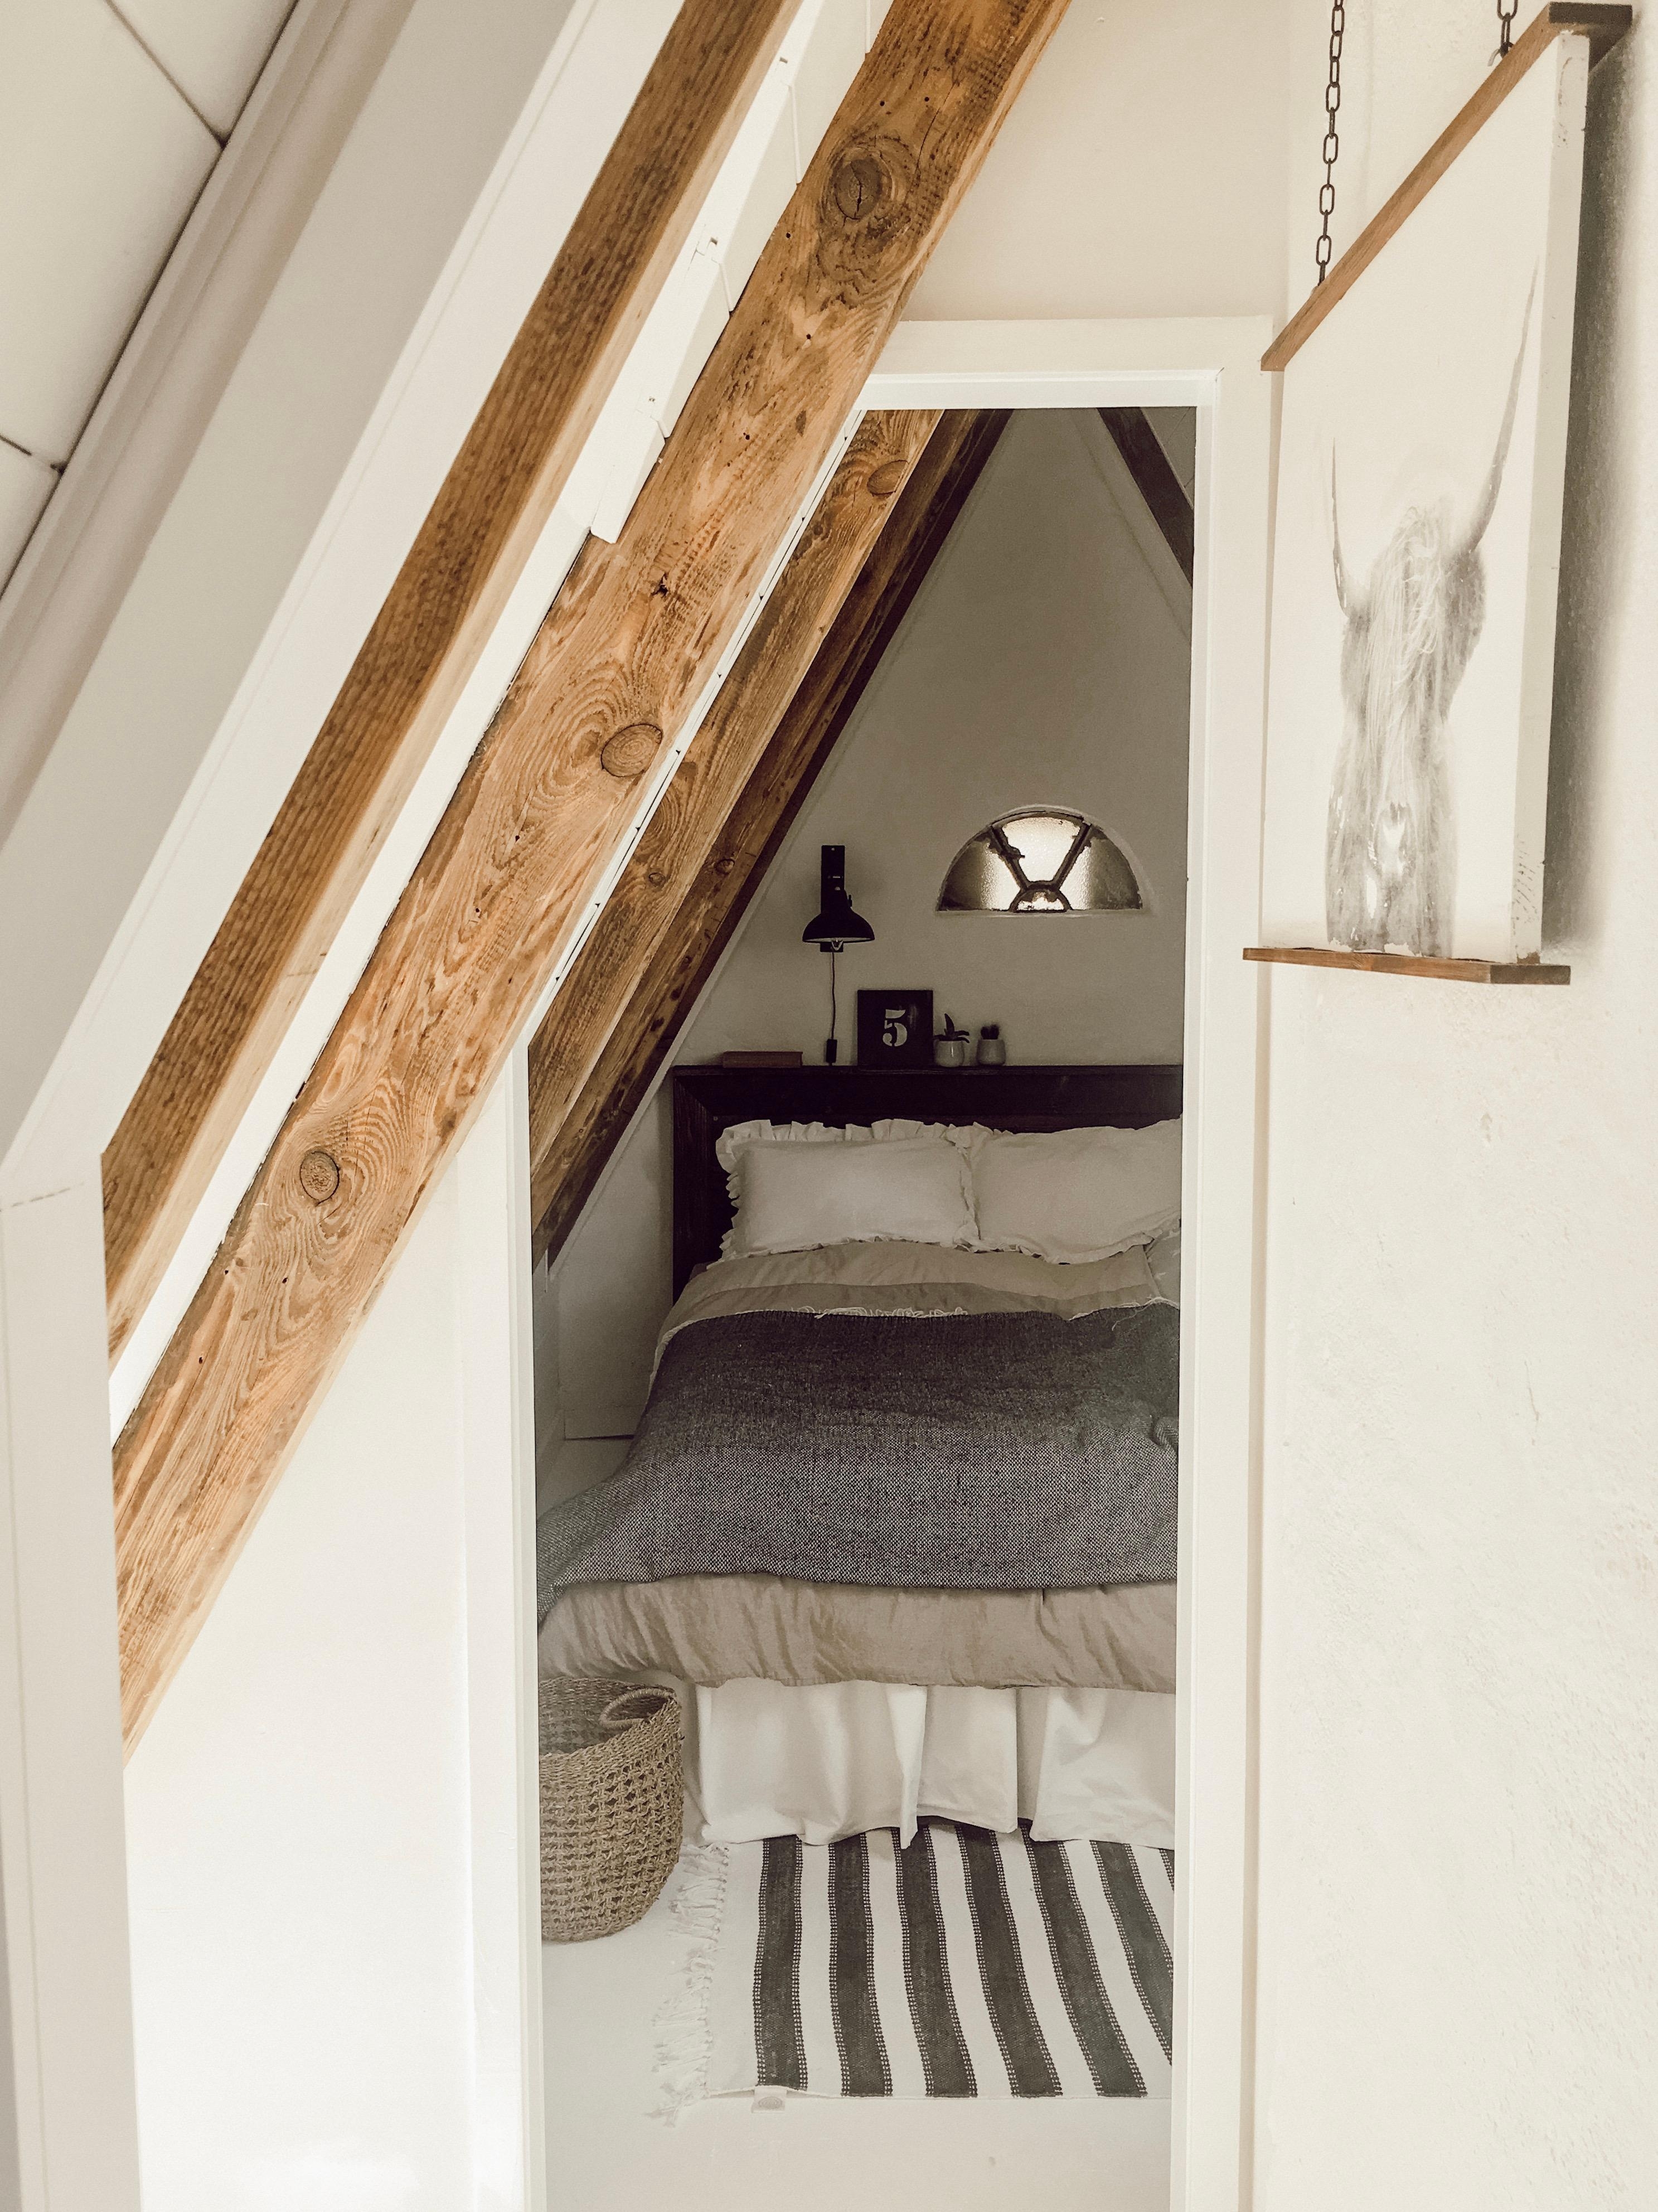 Mein kleinster Raum ist optimal genutzt - auch wenn wir von vorne ins Bett steigen müssen! #livingchallenge #kleinerraum